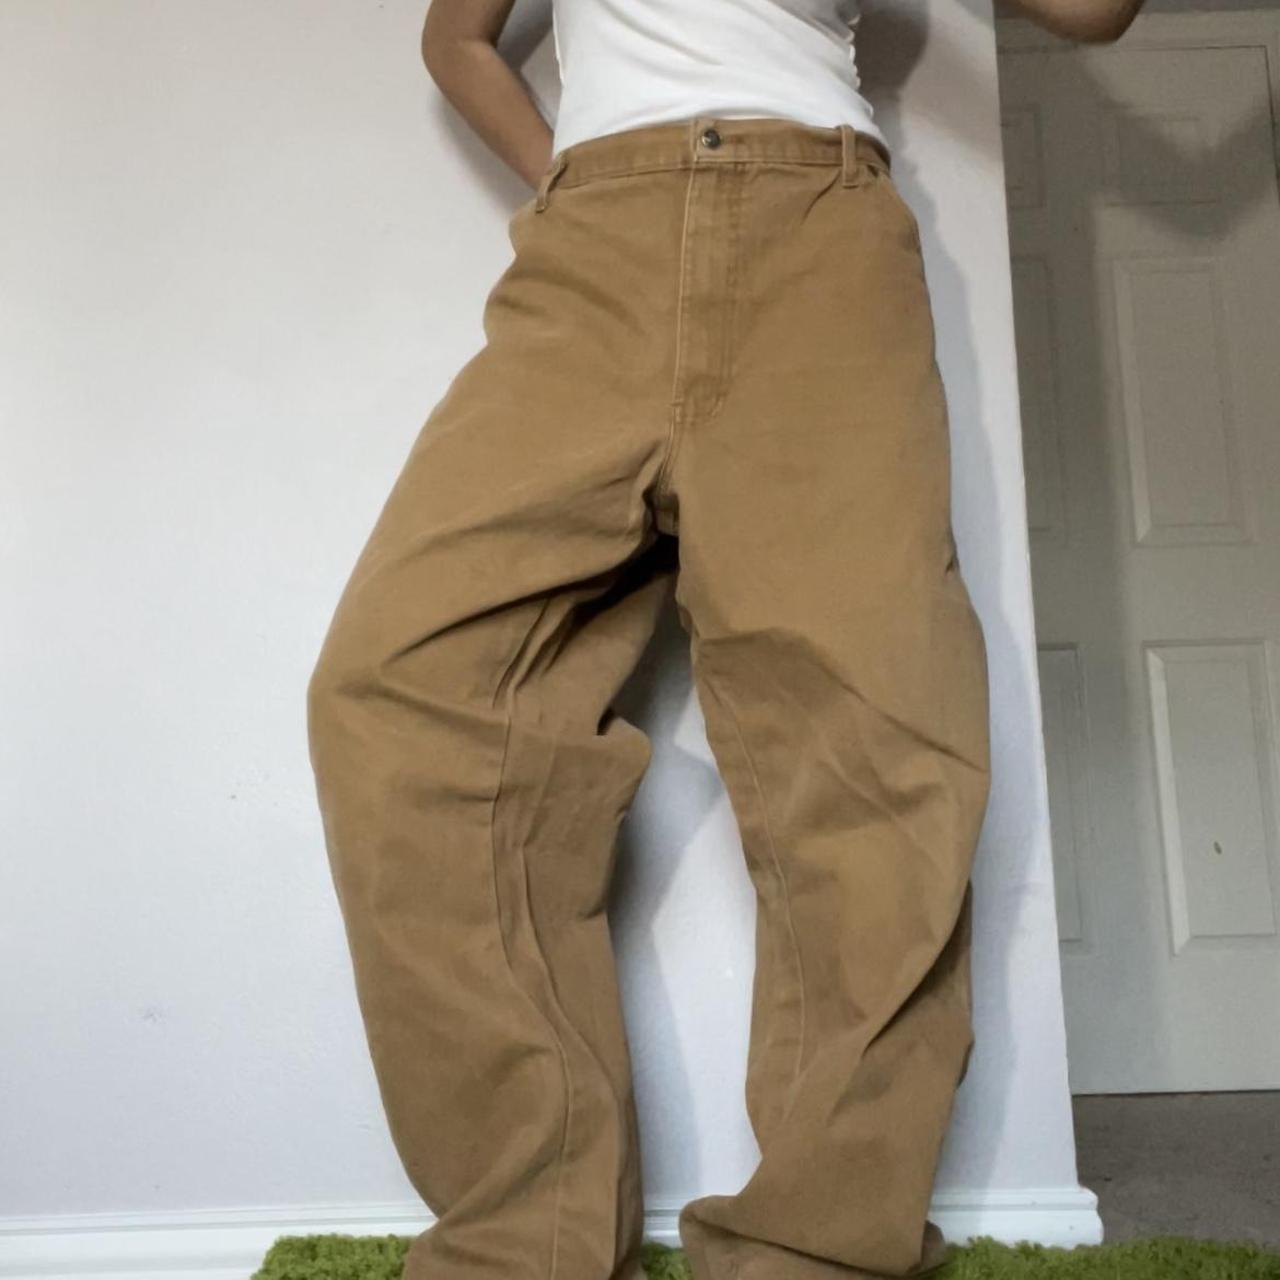 📺 sick vintage tan/cream/brown dickies jeans/pants... - Depop